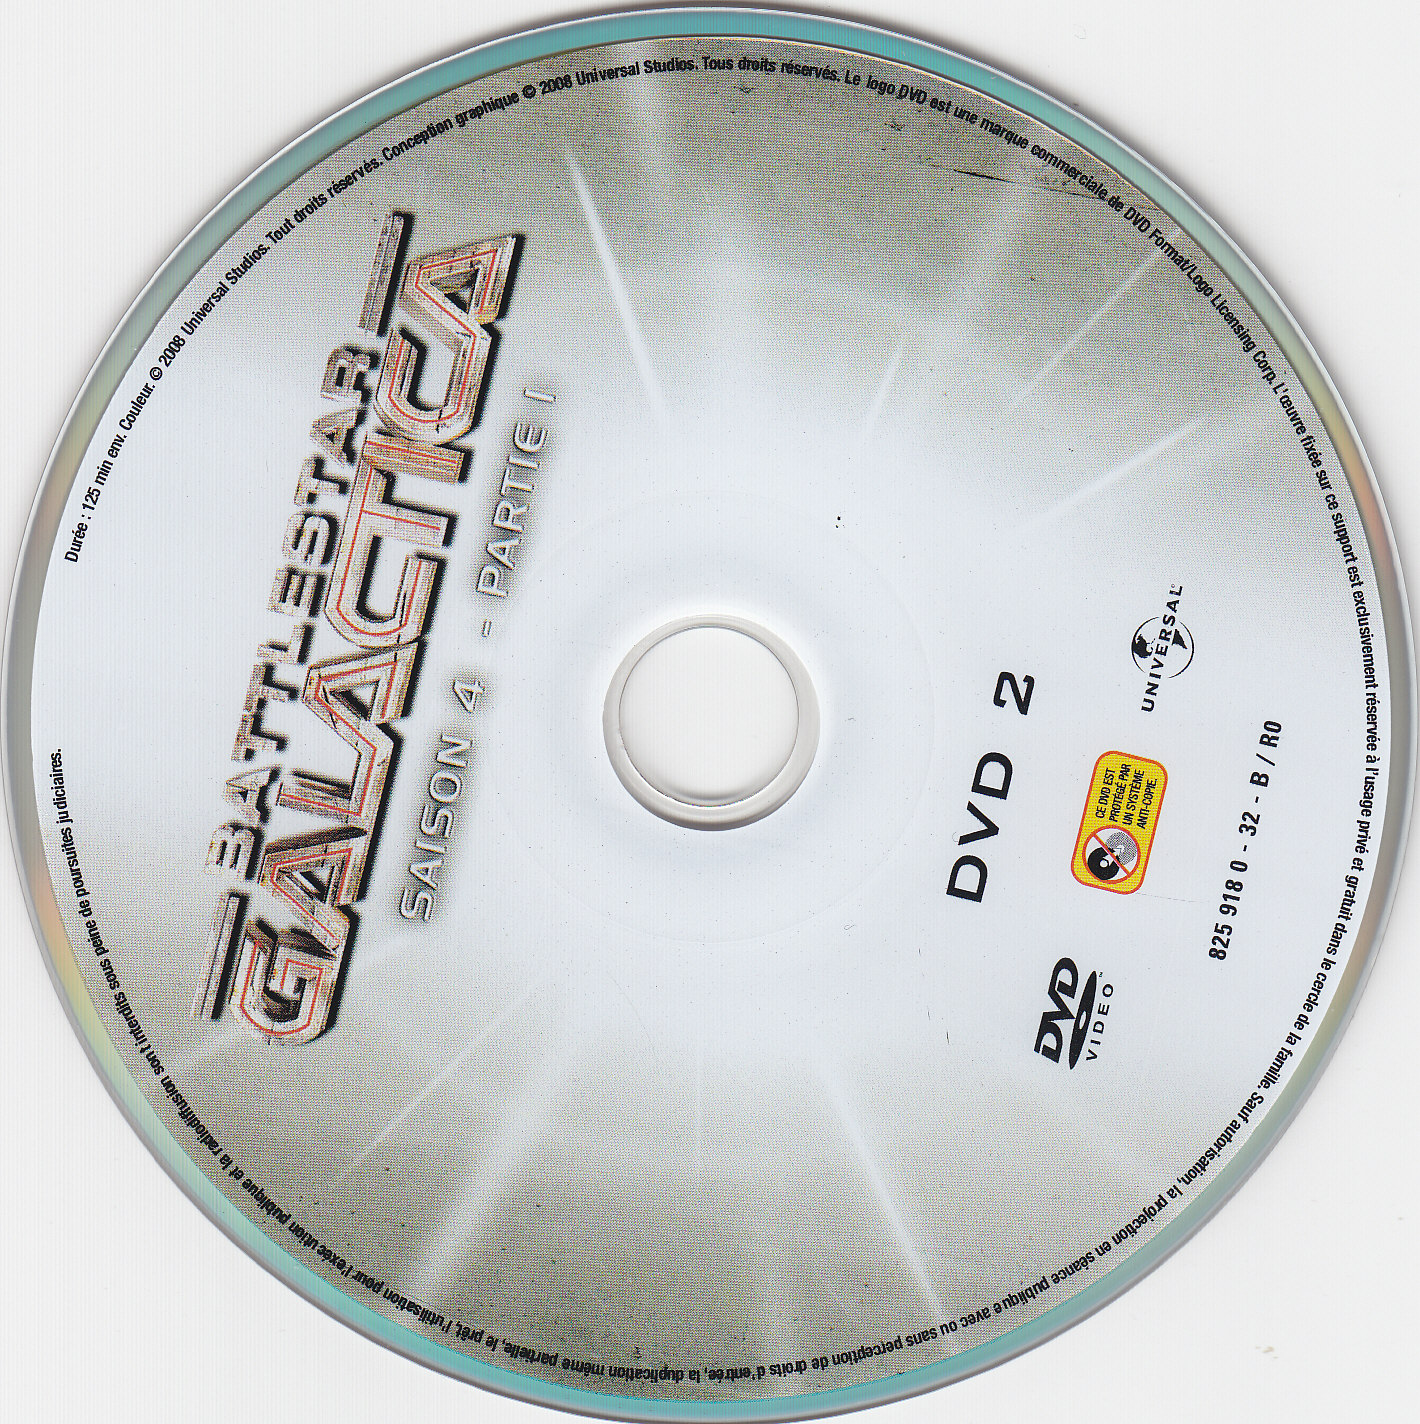 Battlestar Galactica Saison 4 partie 1 DVD 2